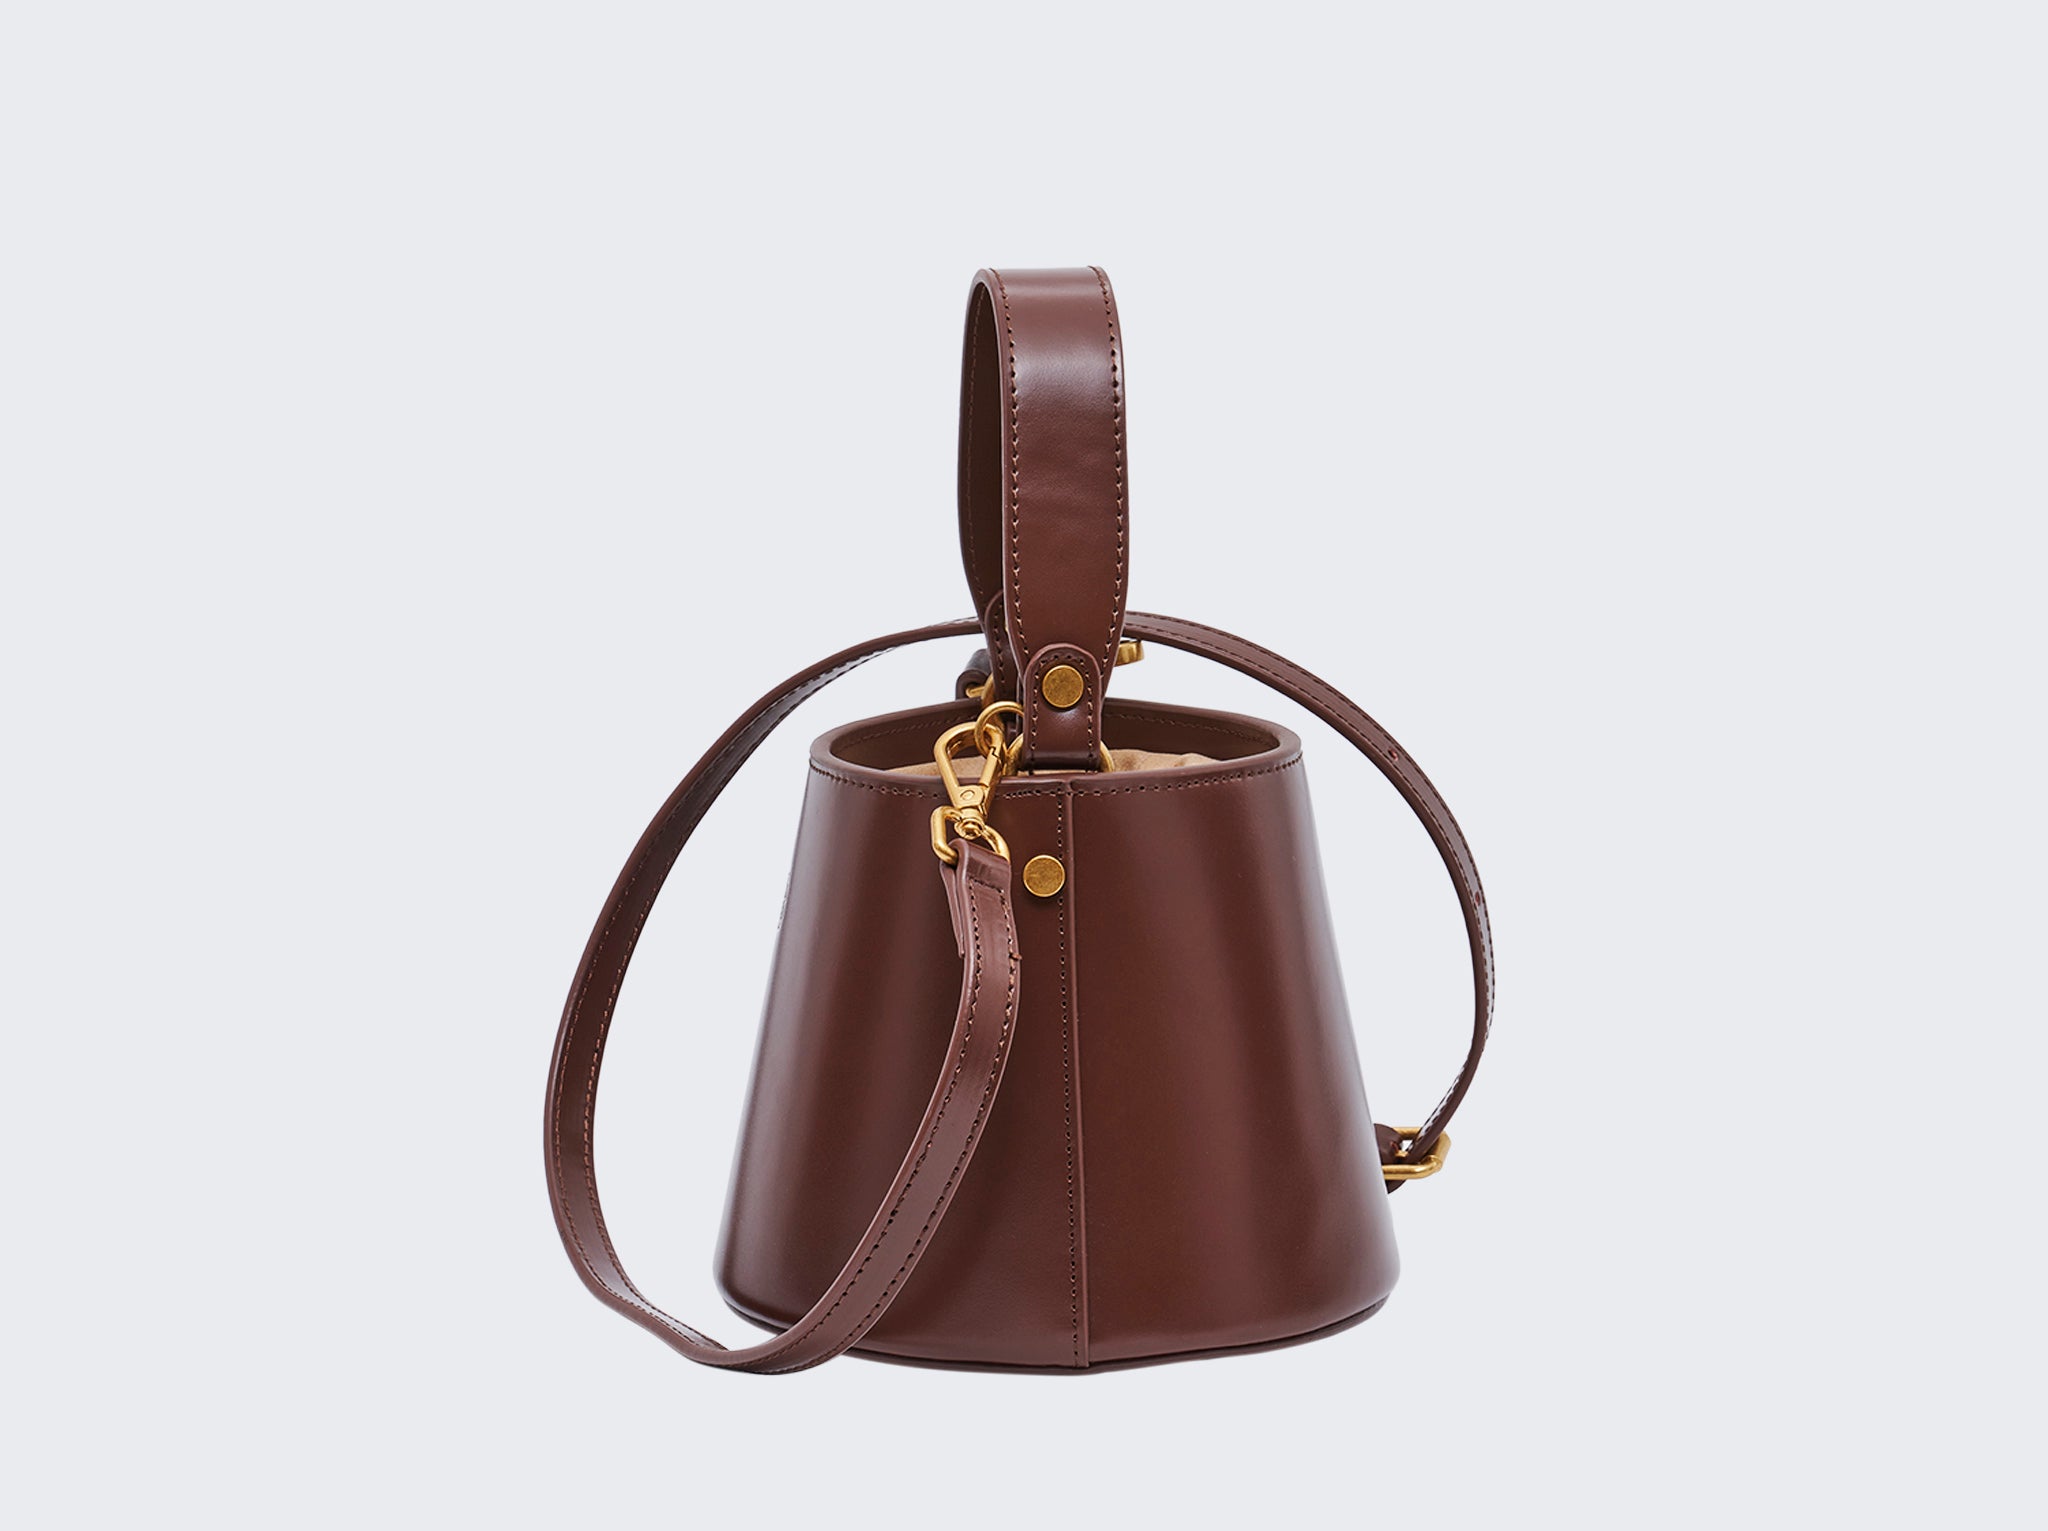 The Antoinette Bucket Bag